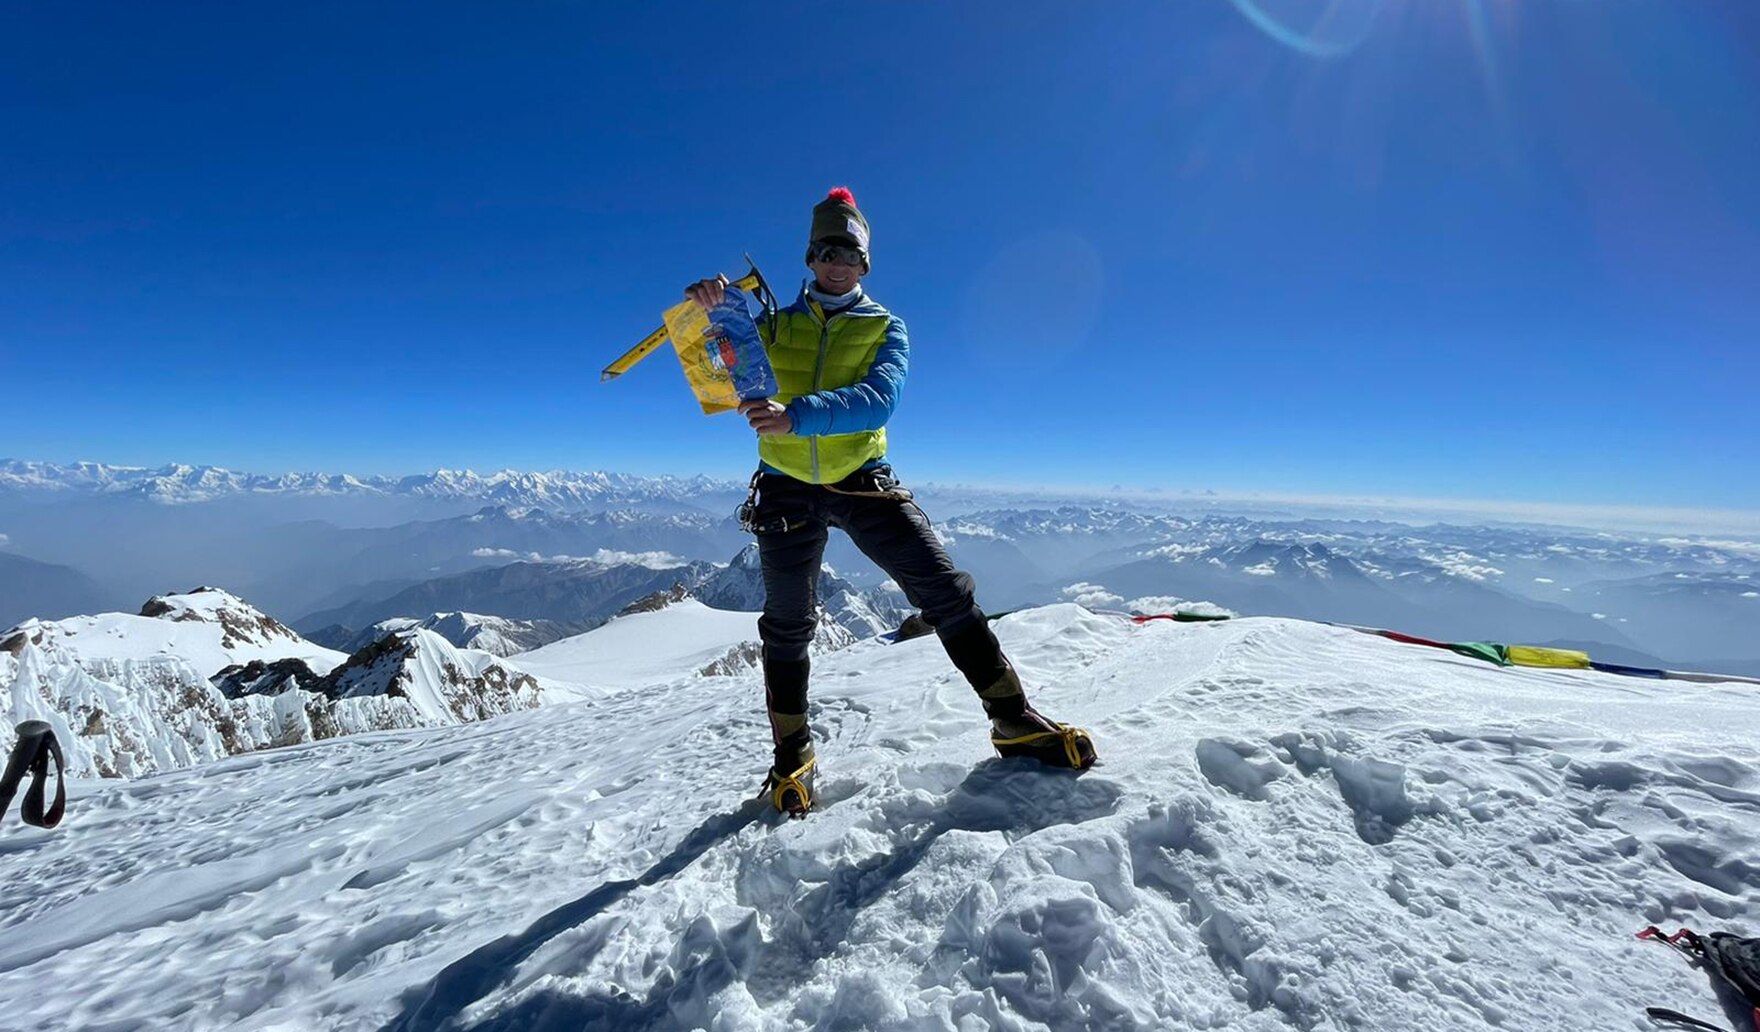 Voller Stolz posiert François Cazzanelli fürs obligatorische Gipfelfoto. Und das zurecht! Schließlich hat er den Gipfel des Diamir gerade in einer neuen Rekordzeit bestiegen.